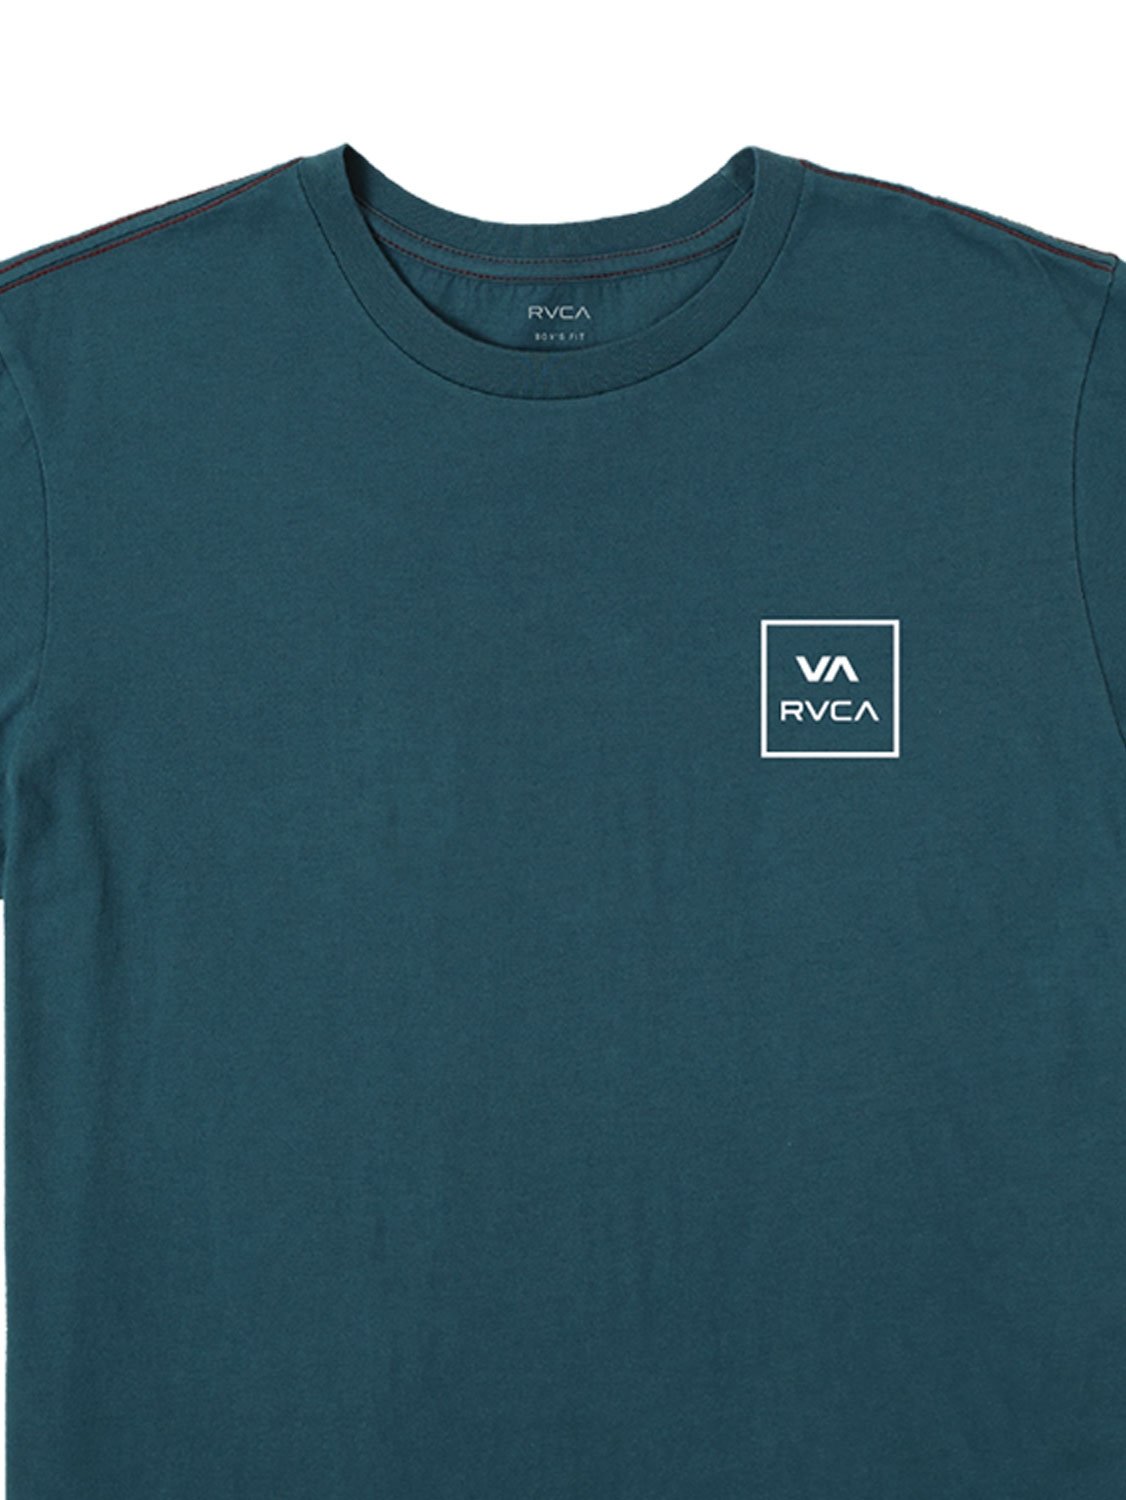 RVCA Men's VA All the Way T-Shirt